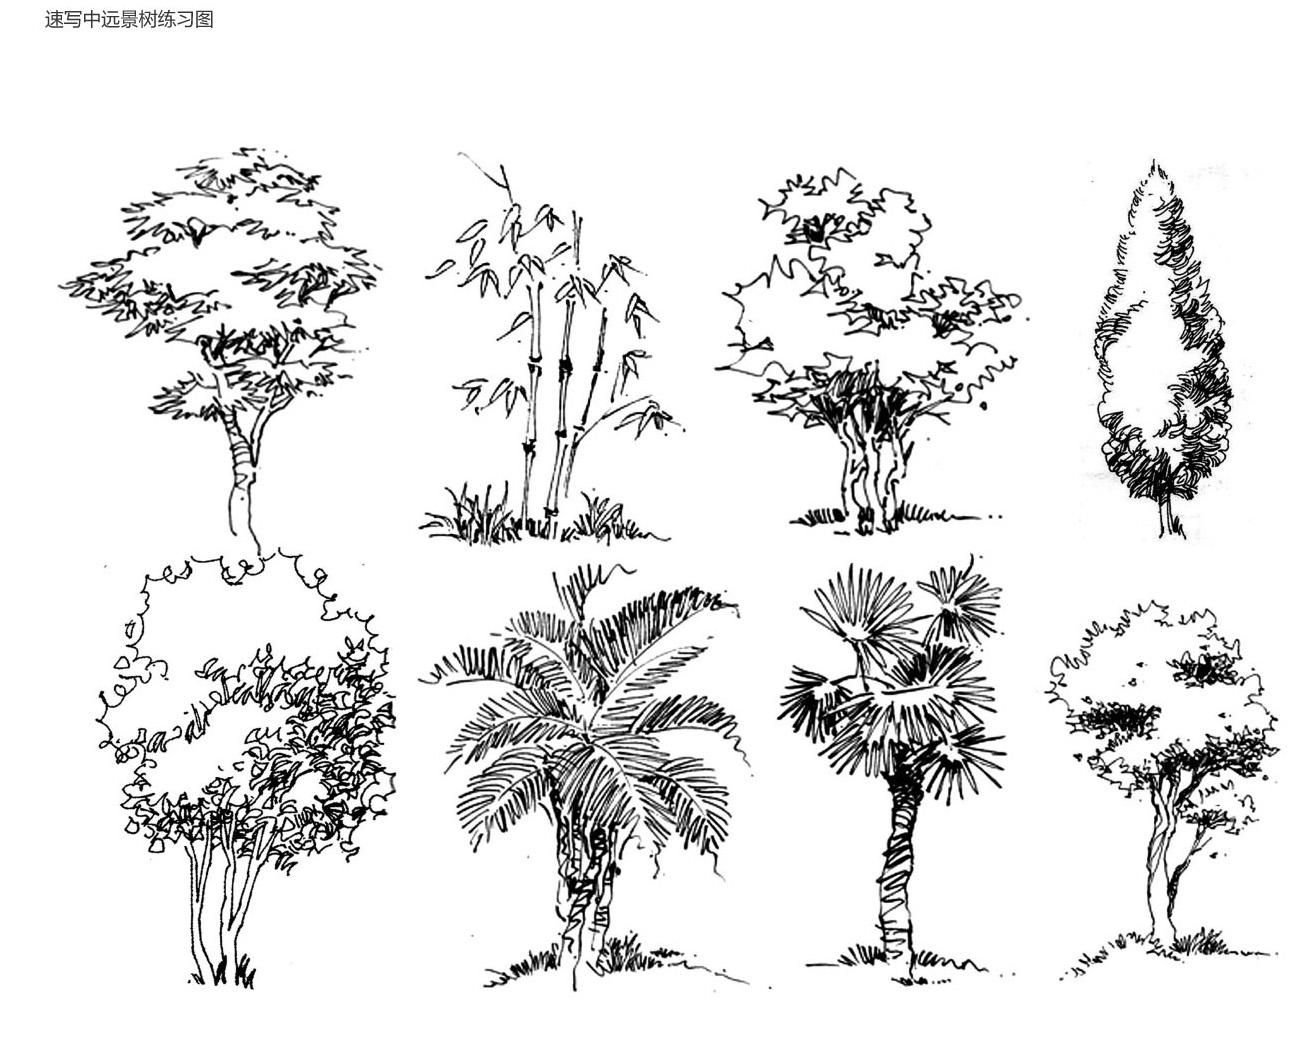 Деревья в архитектурной графике